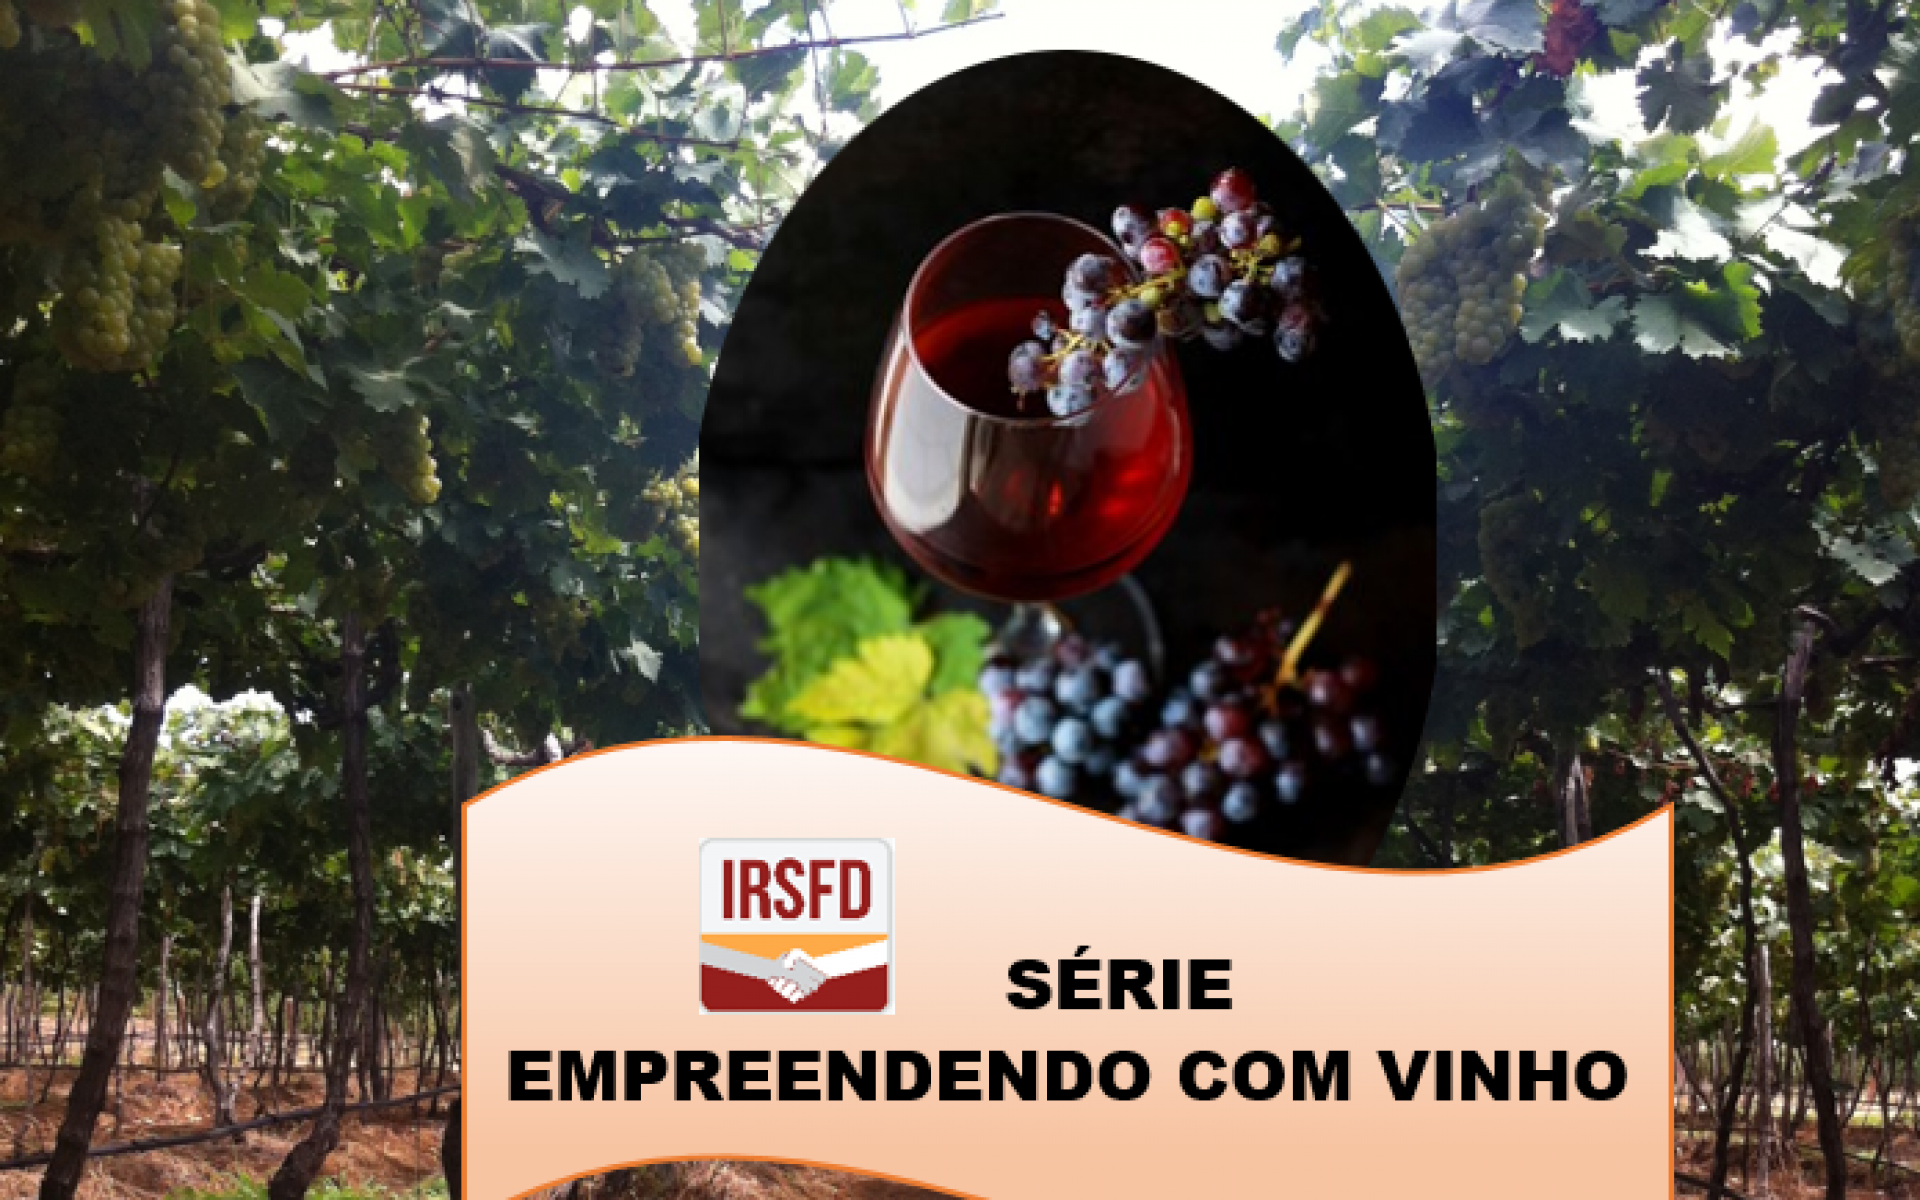 Série IRSFD – Empreendendo com vinho                               P.03 QUAIS TIPOS DE VINHOS SÃO RECOMENDADOS PARA PEQUENOS PRODUTORES?